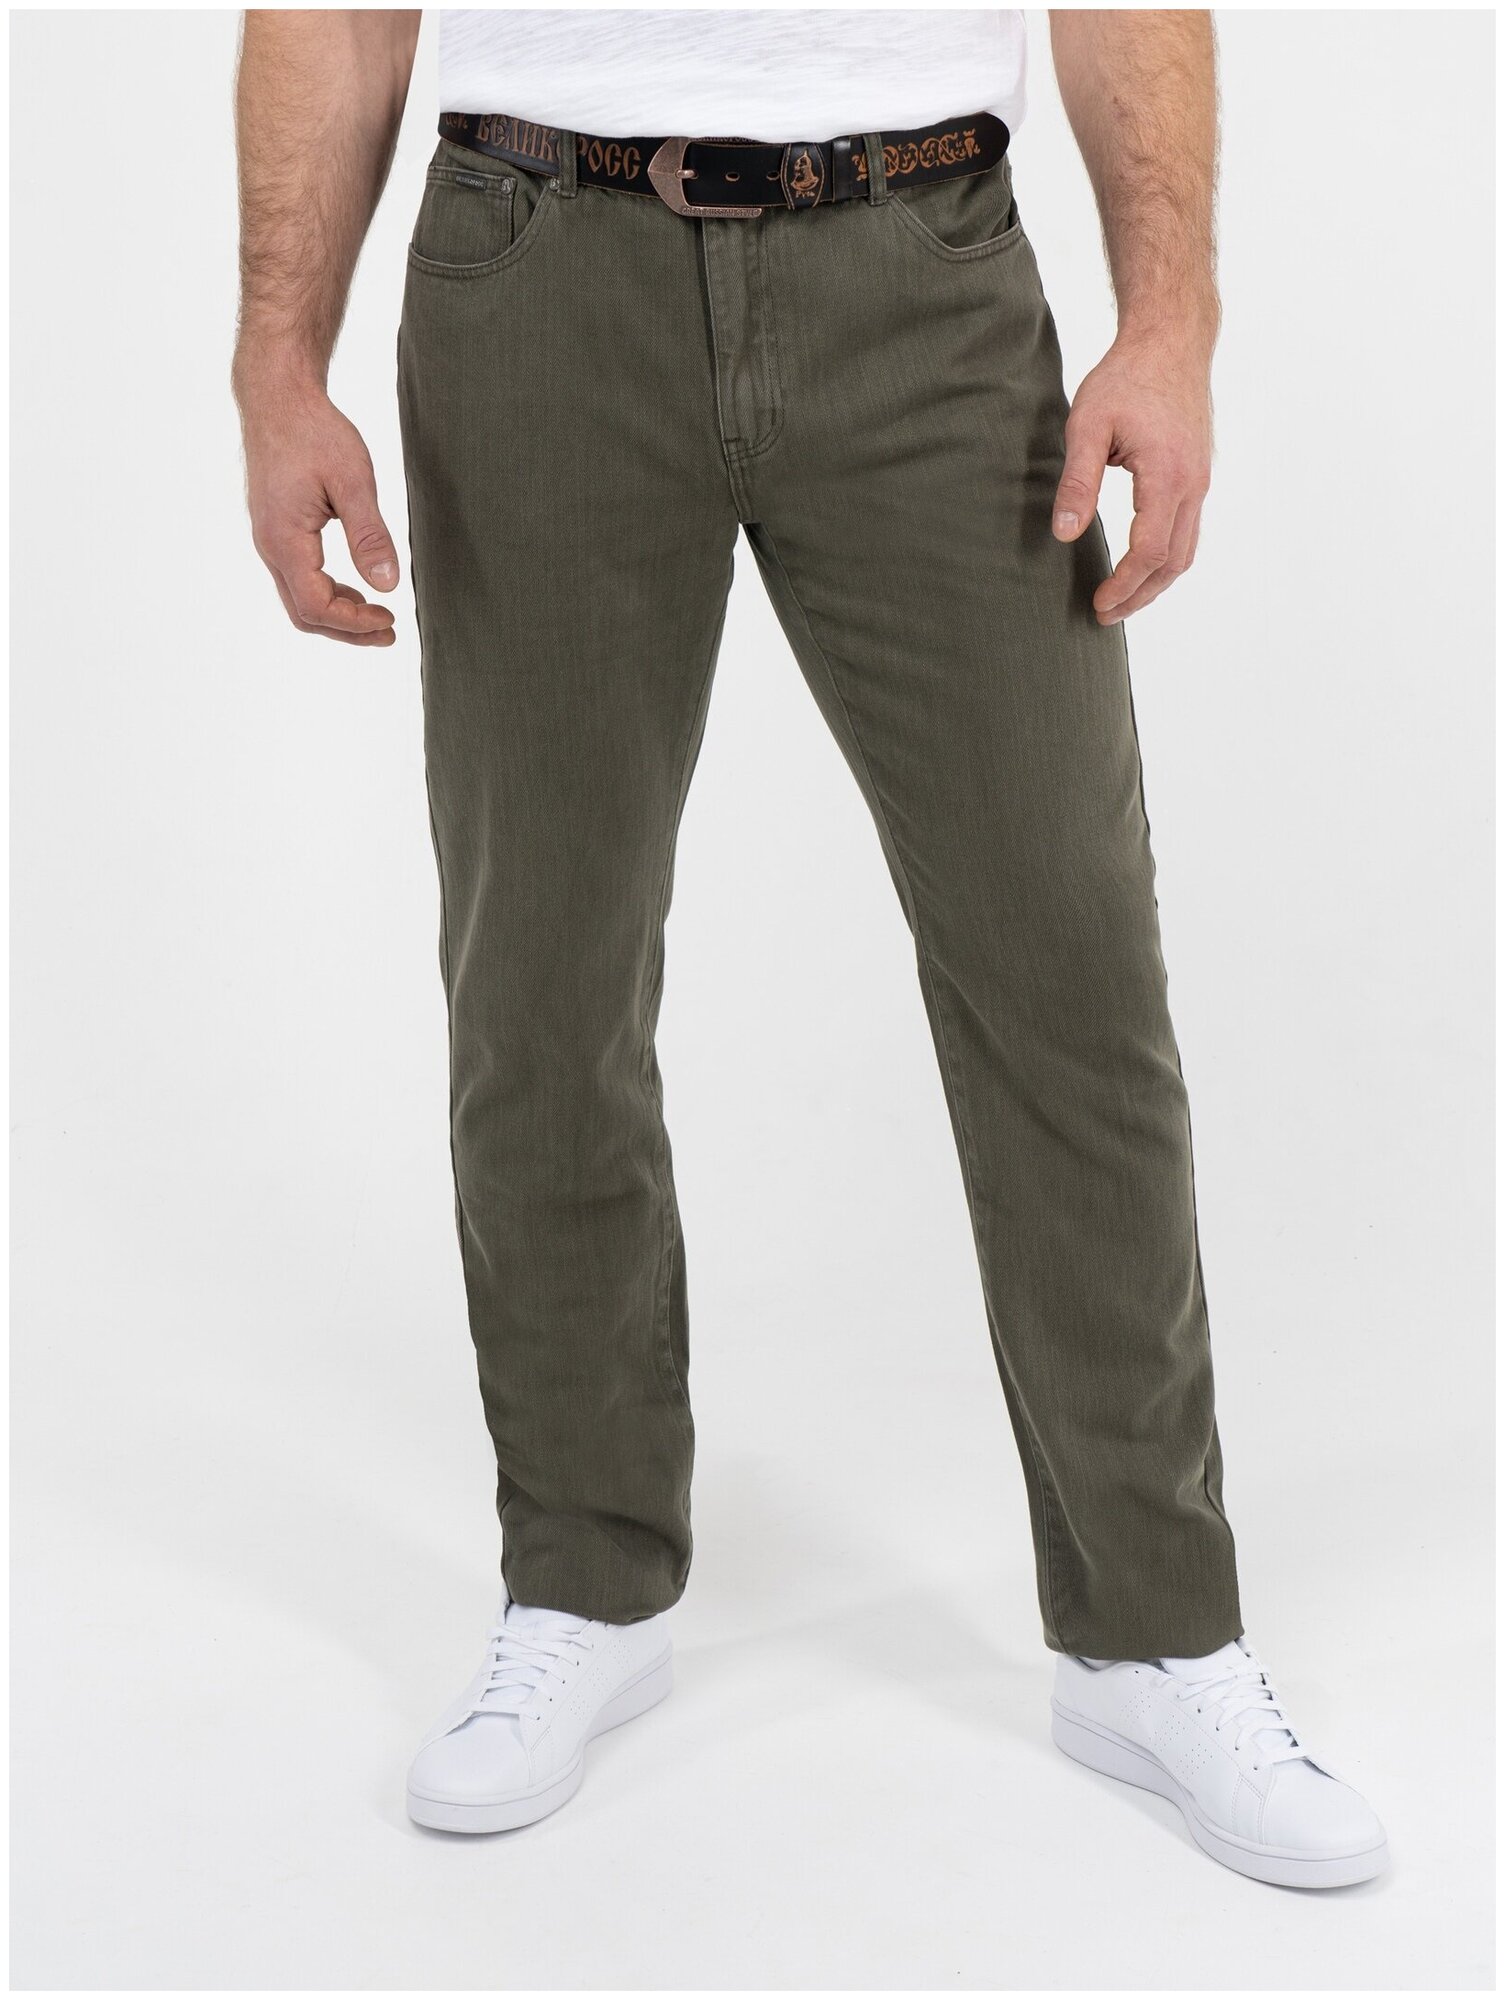 Джинсы мужские Великоросс хаки цвета мужские джинсы хаки из 100%-ного премиального хлопка 